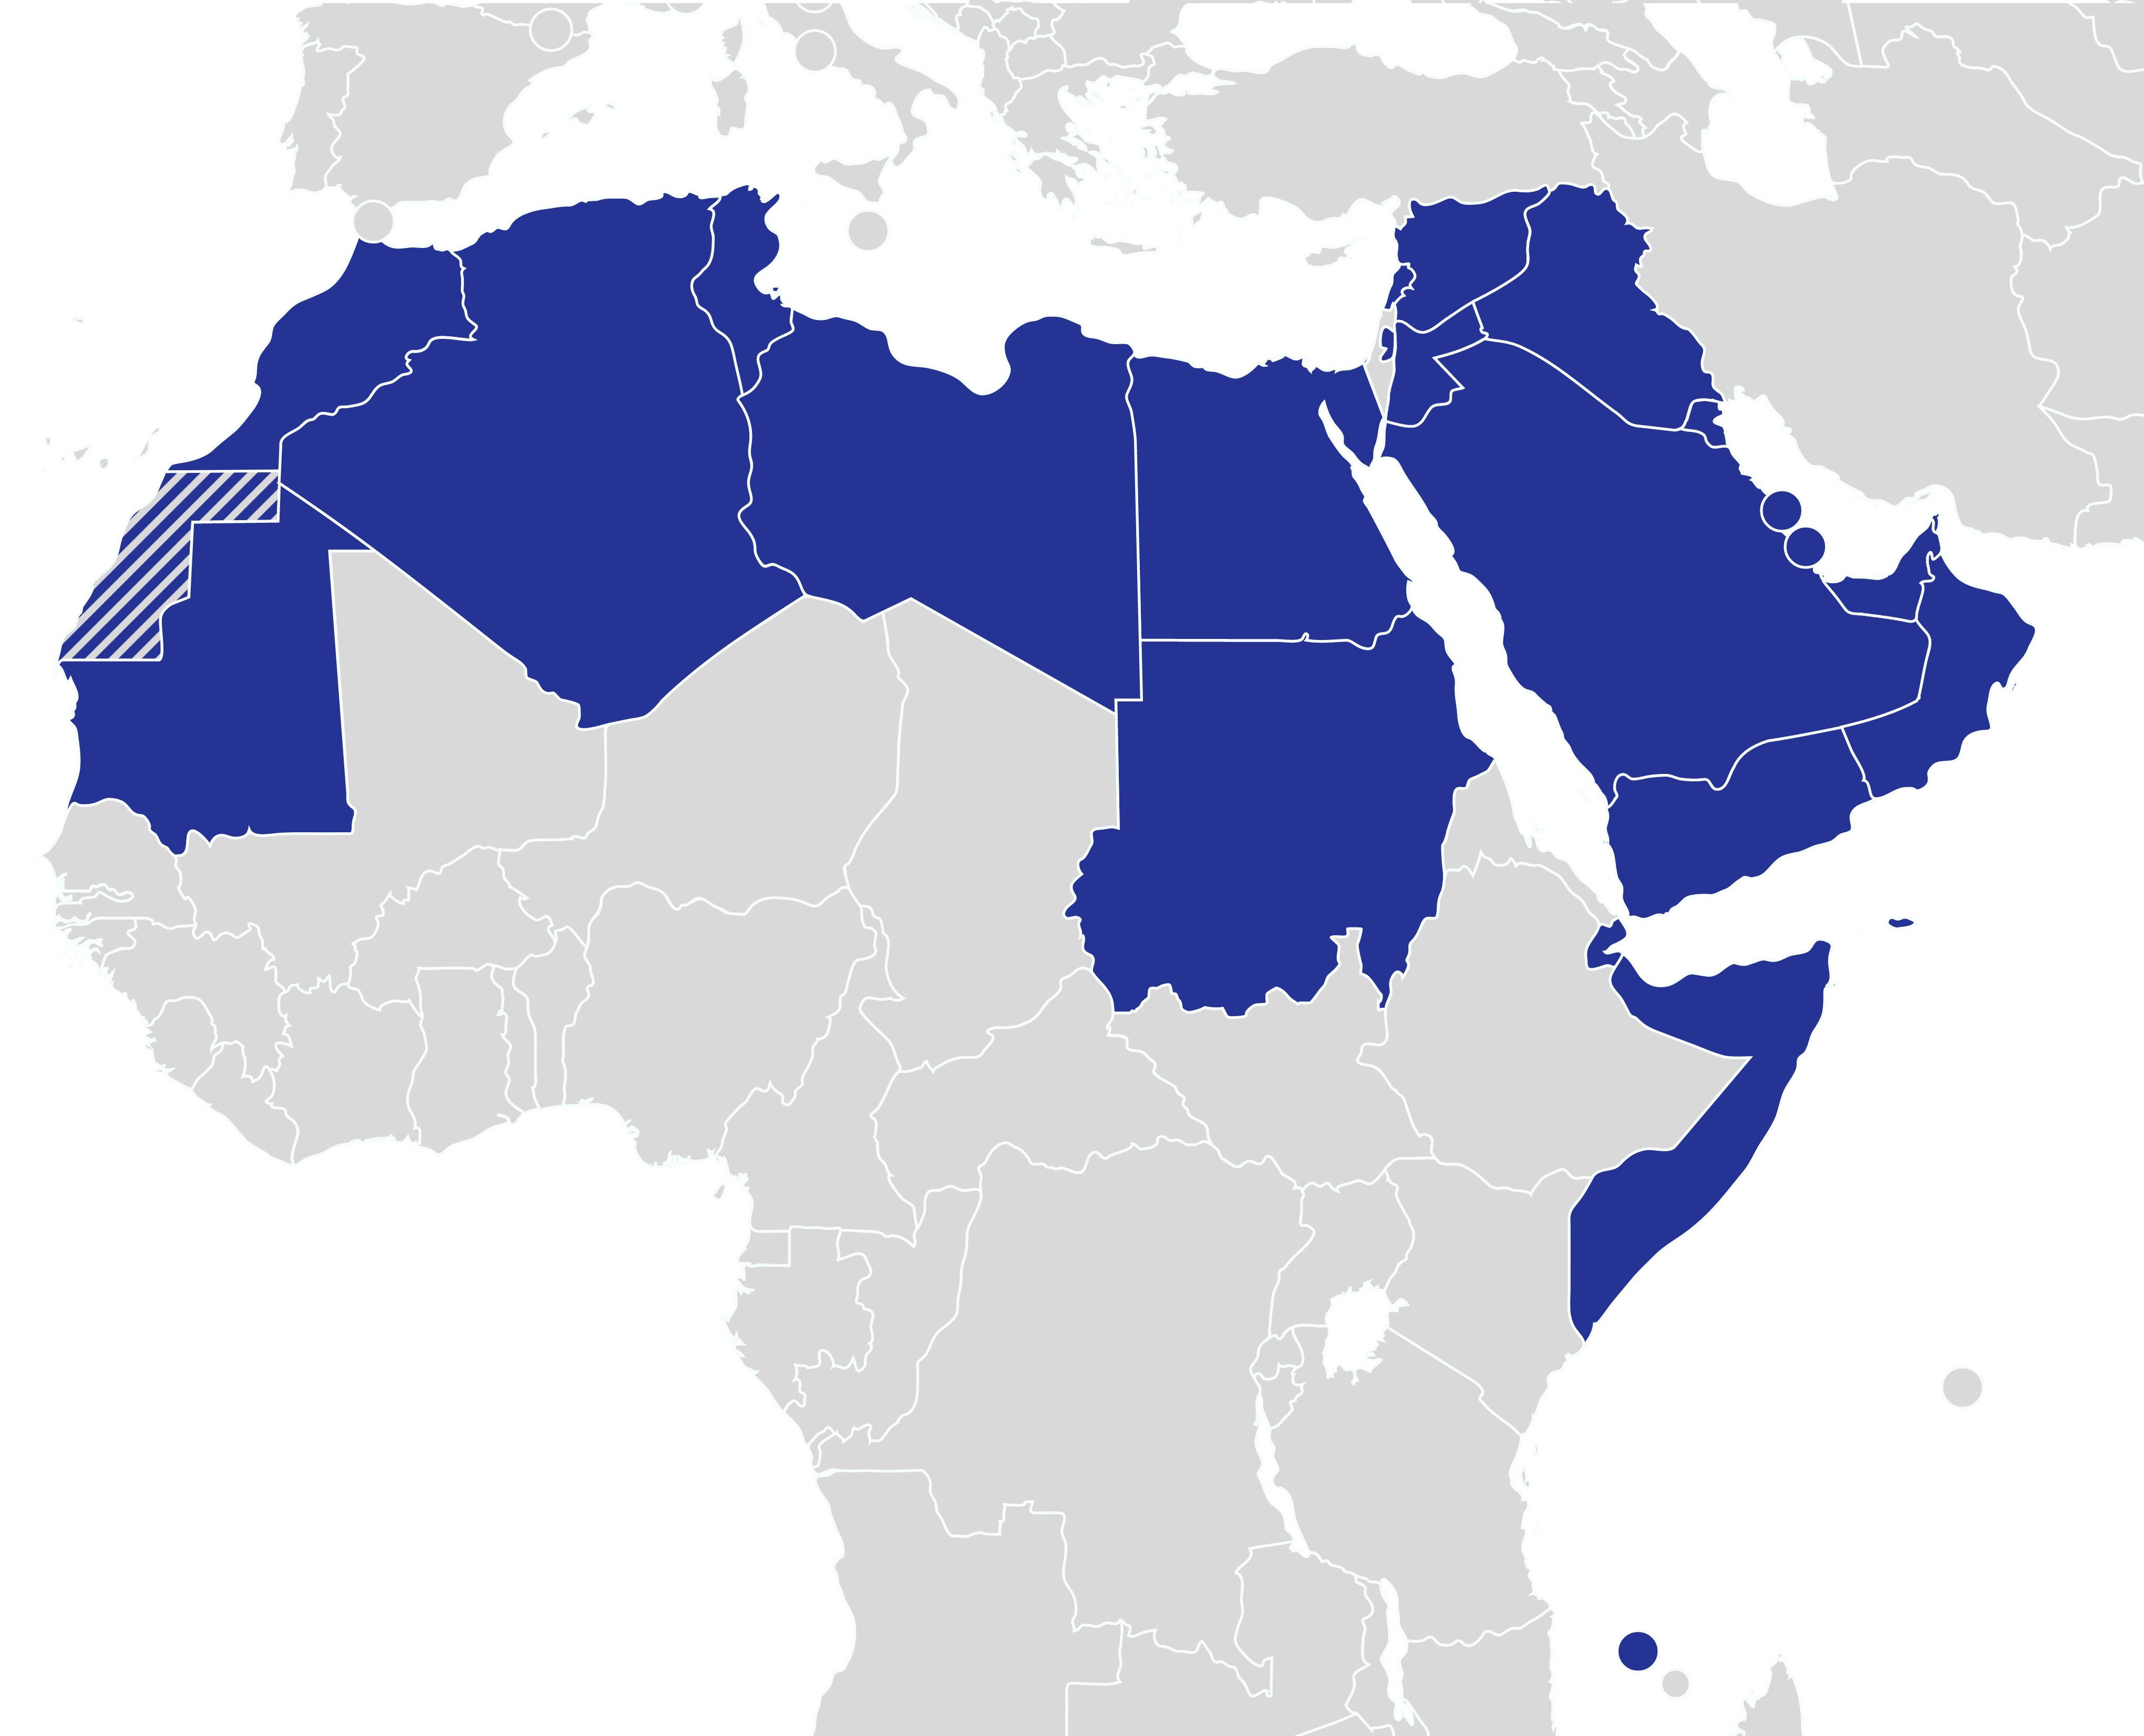 خريطة صماء للدول العربية ملونة بالأزرق